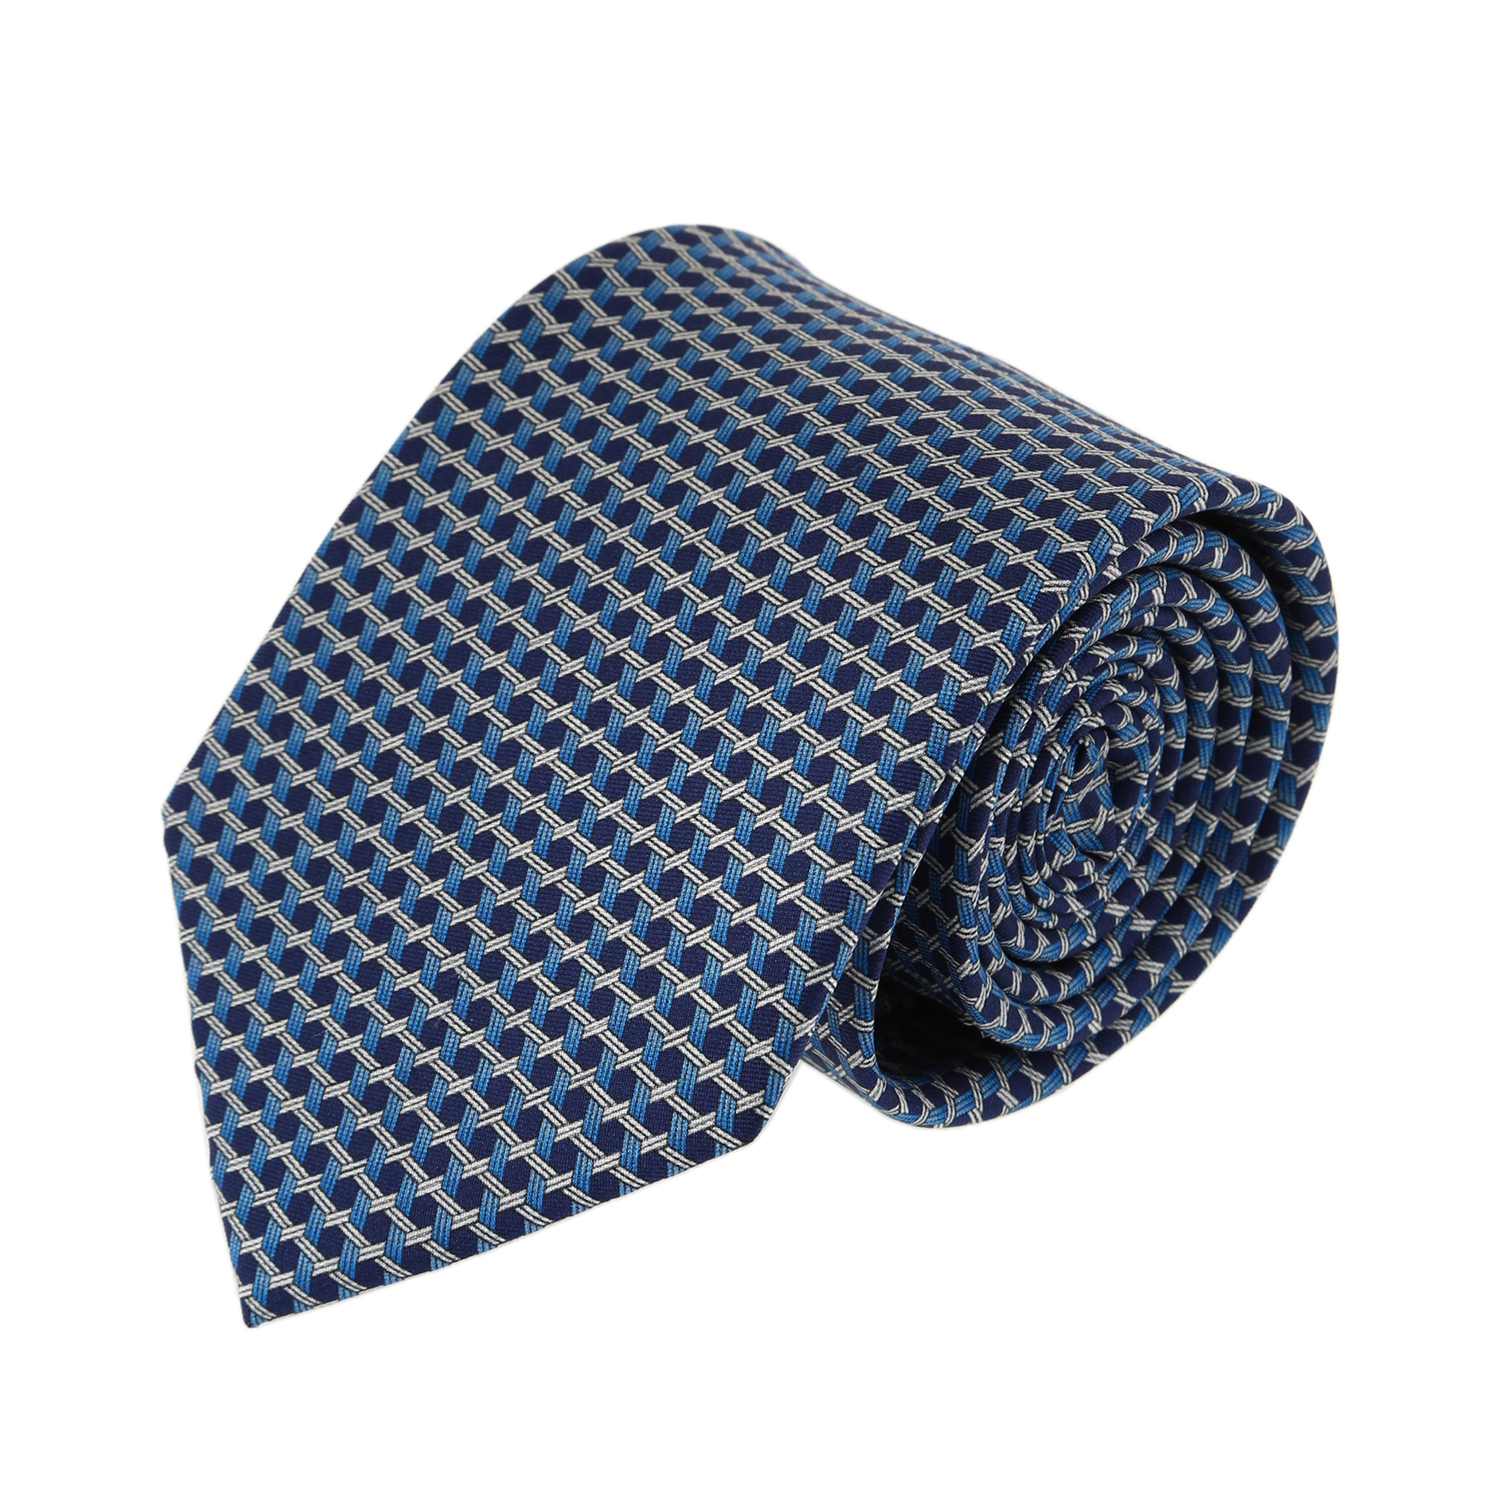 עניבה דגם מגן דוד תכלת כחול